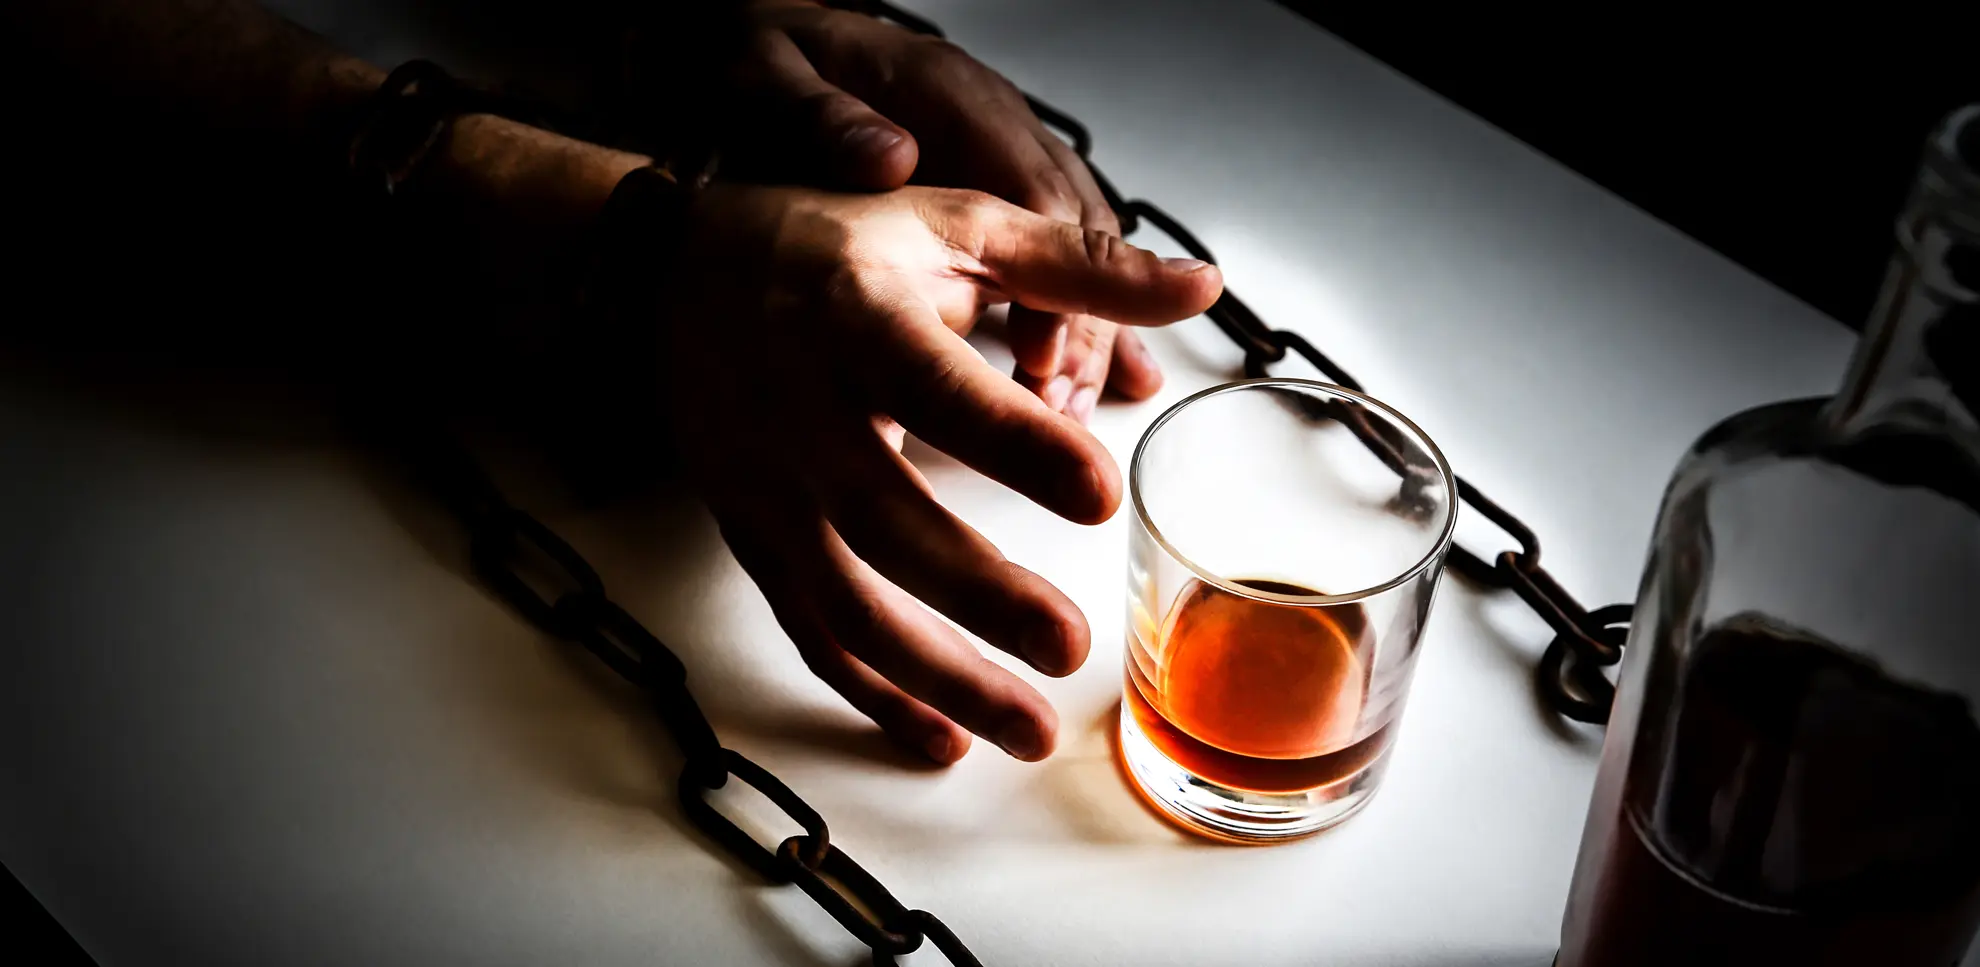 Misbrugsbehandling I Alkoholmisbrug I Hash misbrug I Kokain misbrug I Ambulant misbrugsbehandling